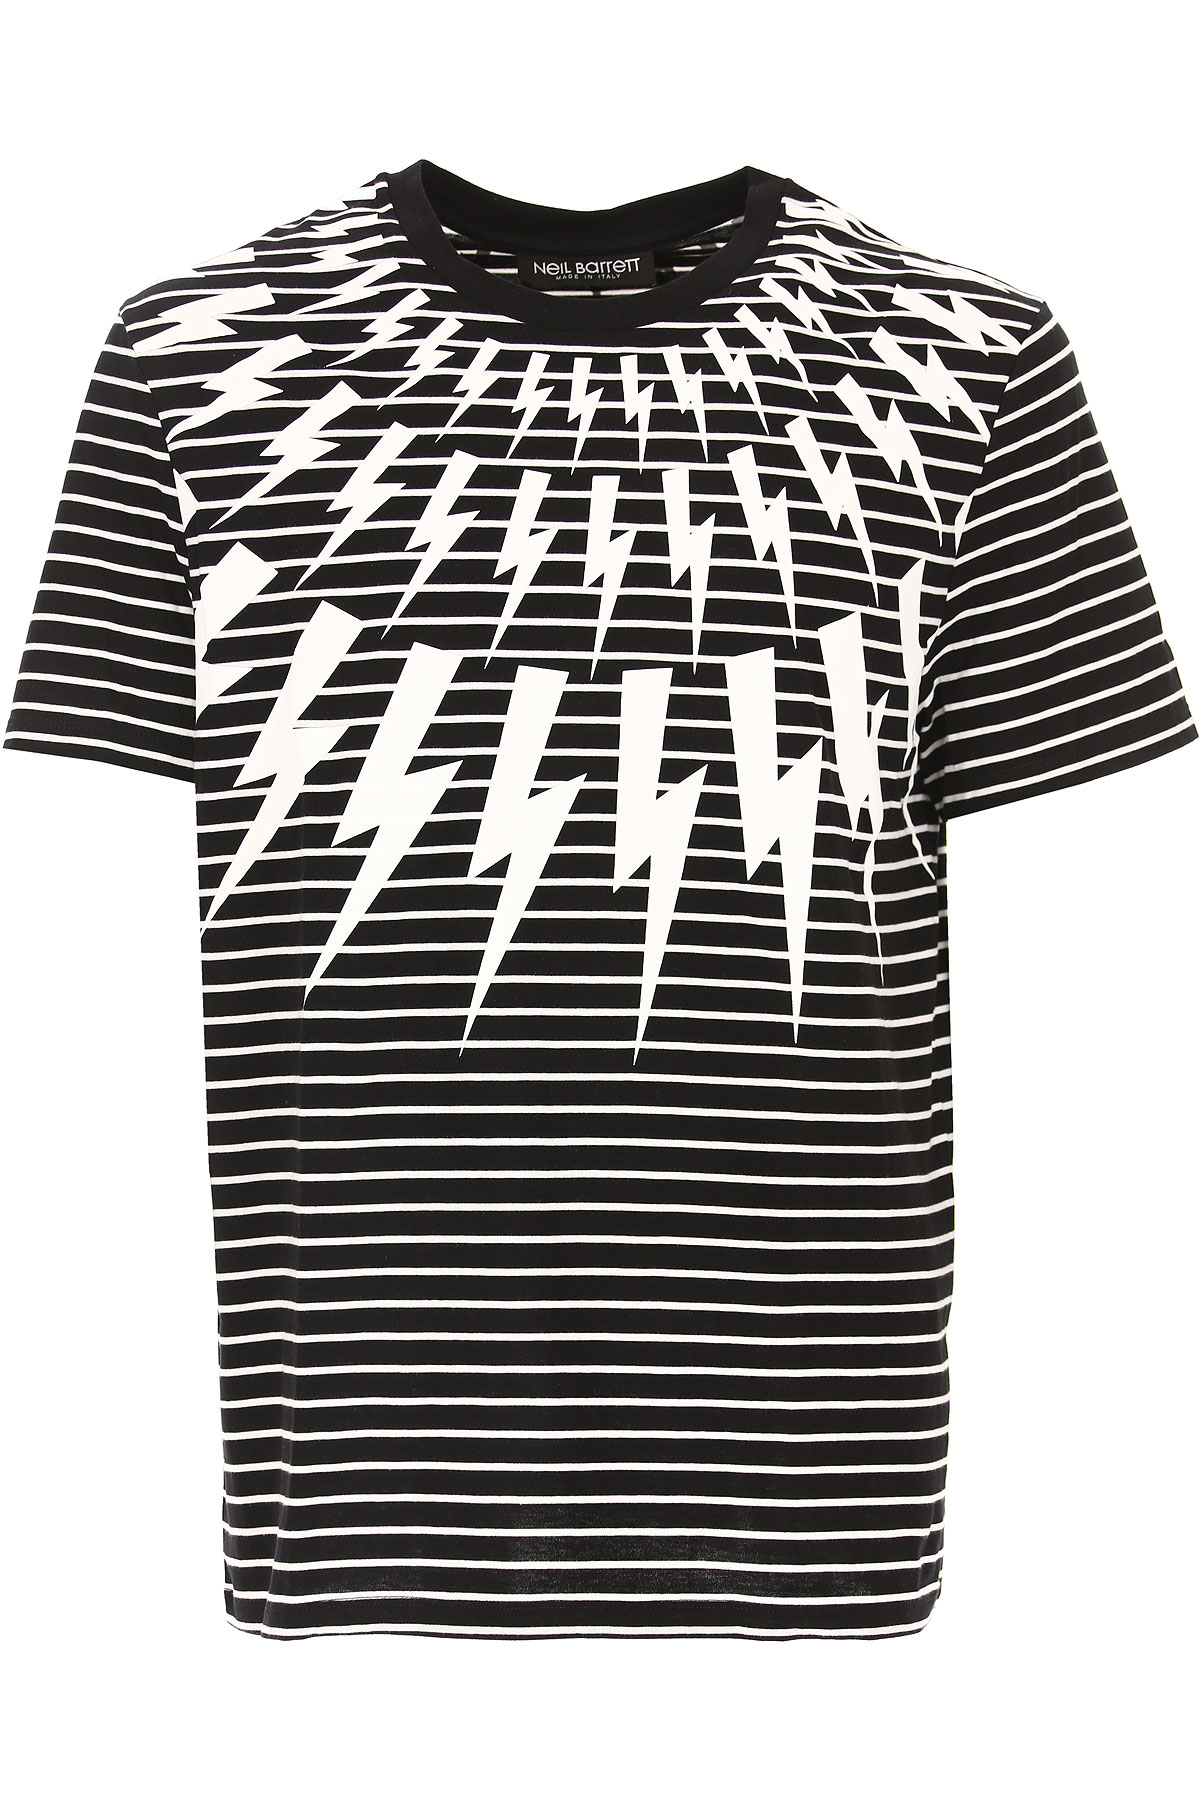 Neil Barrett T-shirt Homme, Noir, Coton, 2017, L M S XL XS